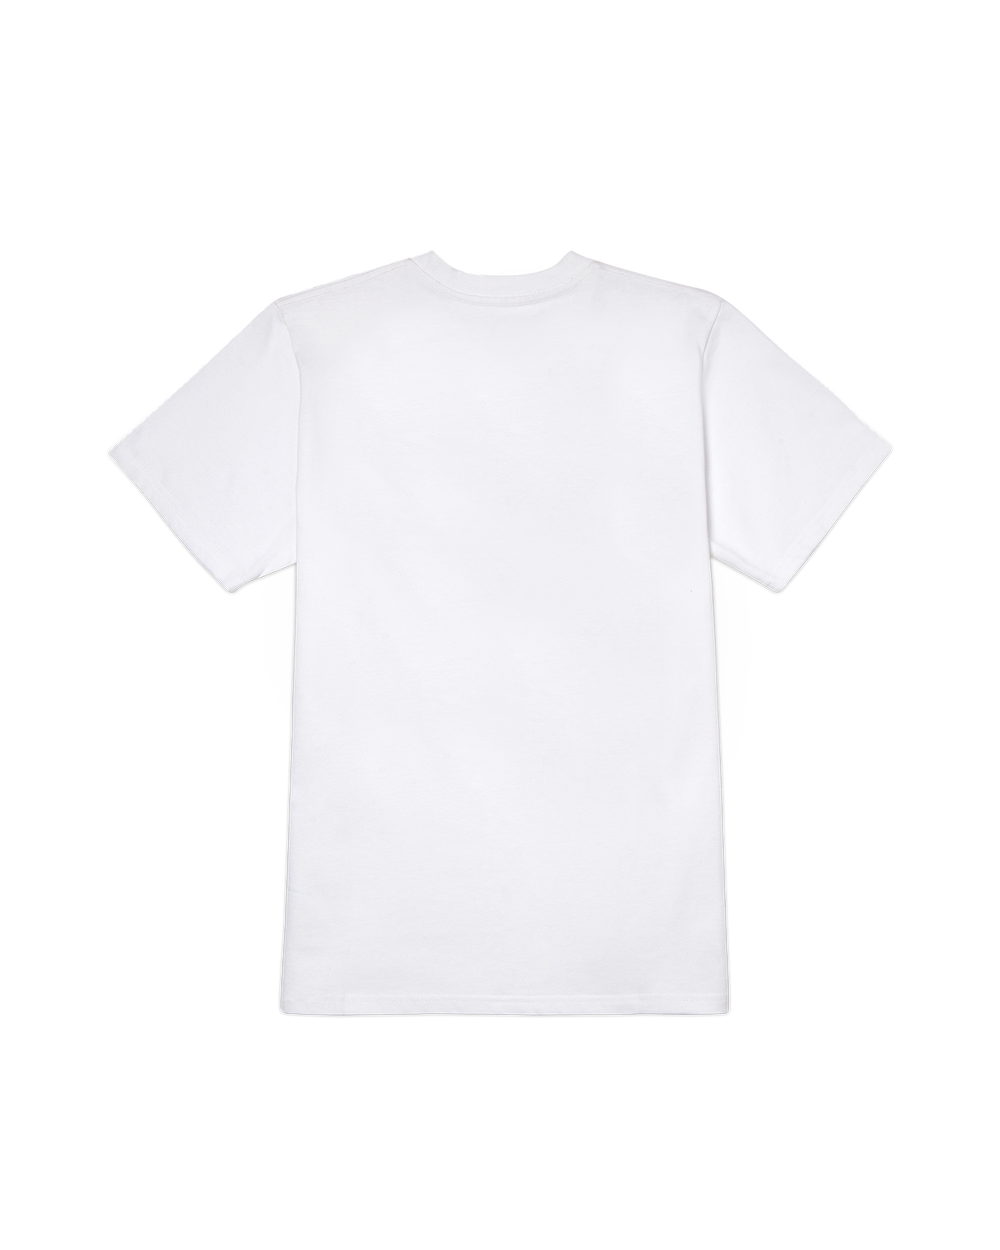 選べるサイズ展開 Casablanca 大人気ブランド テニスコート柄 Tシャツ White 海外最新 Www Premiervbleague Com